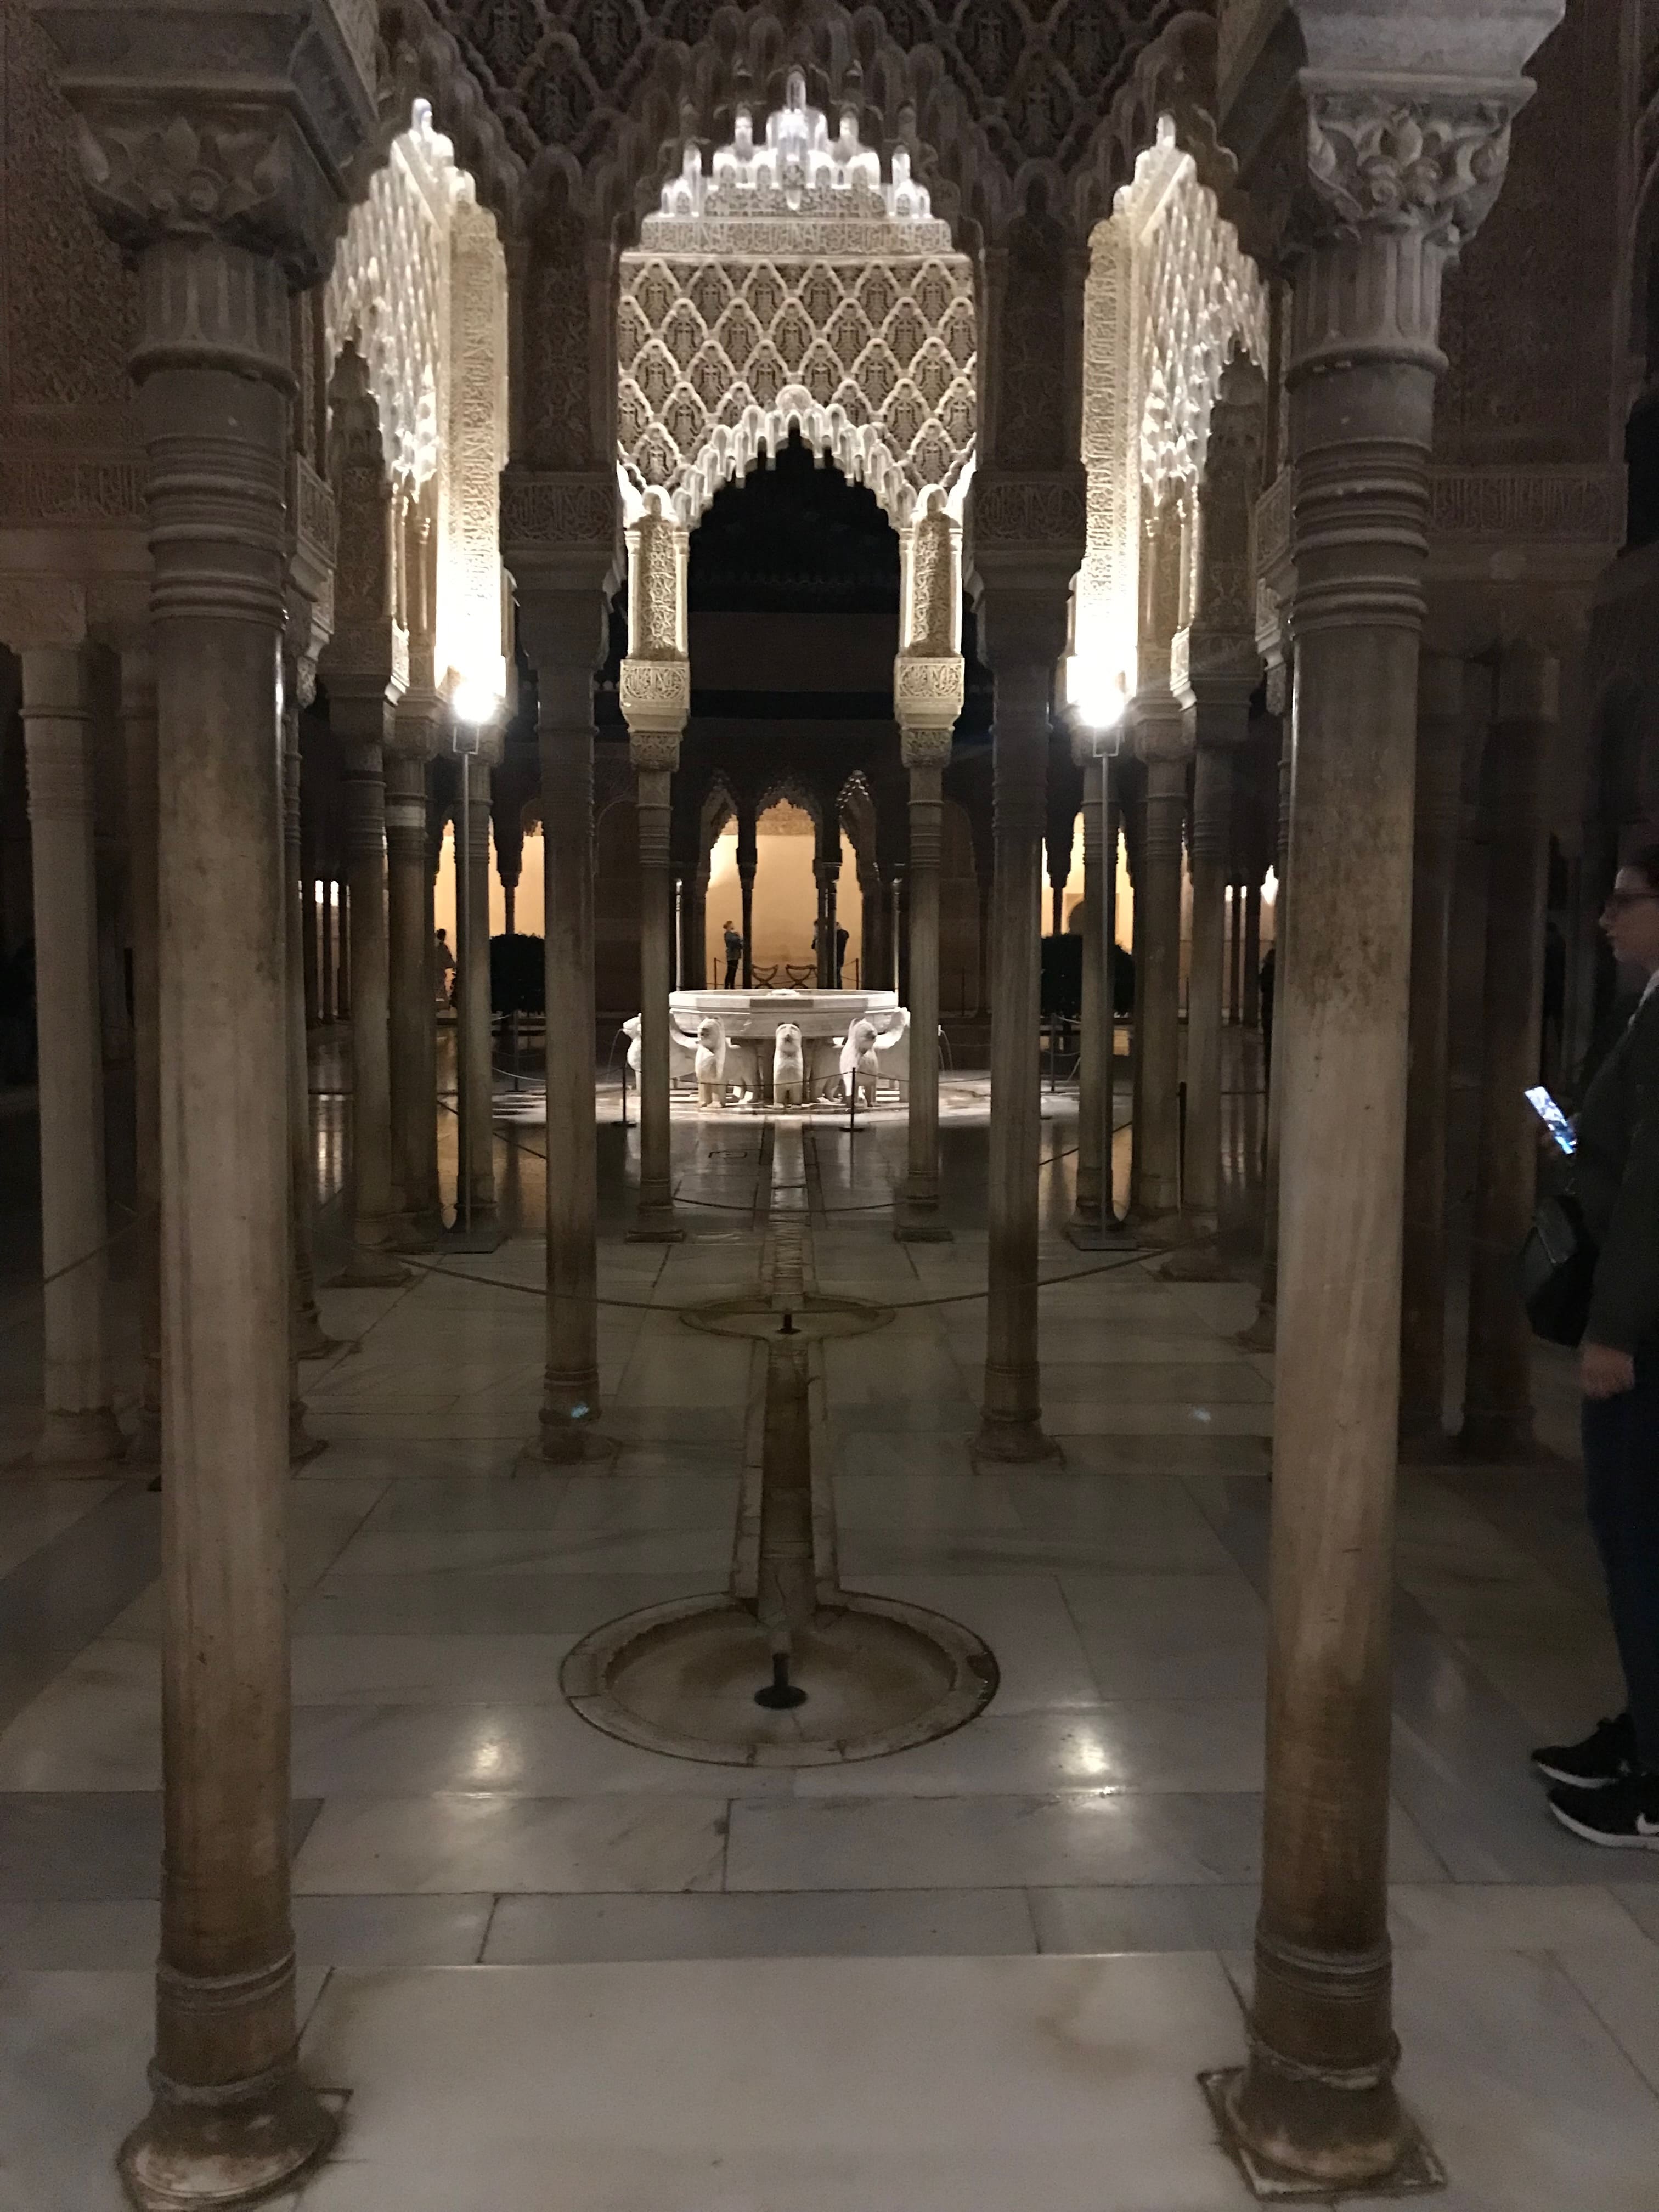 pario de la alhambra con detalles de decorado árabe